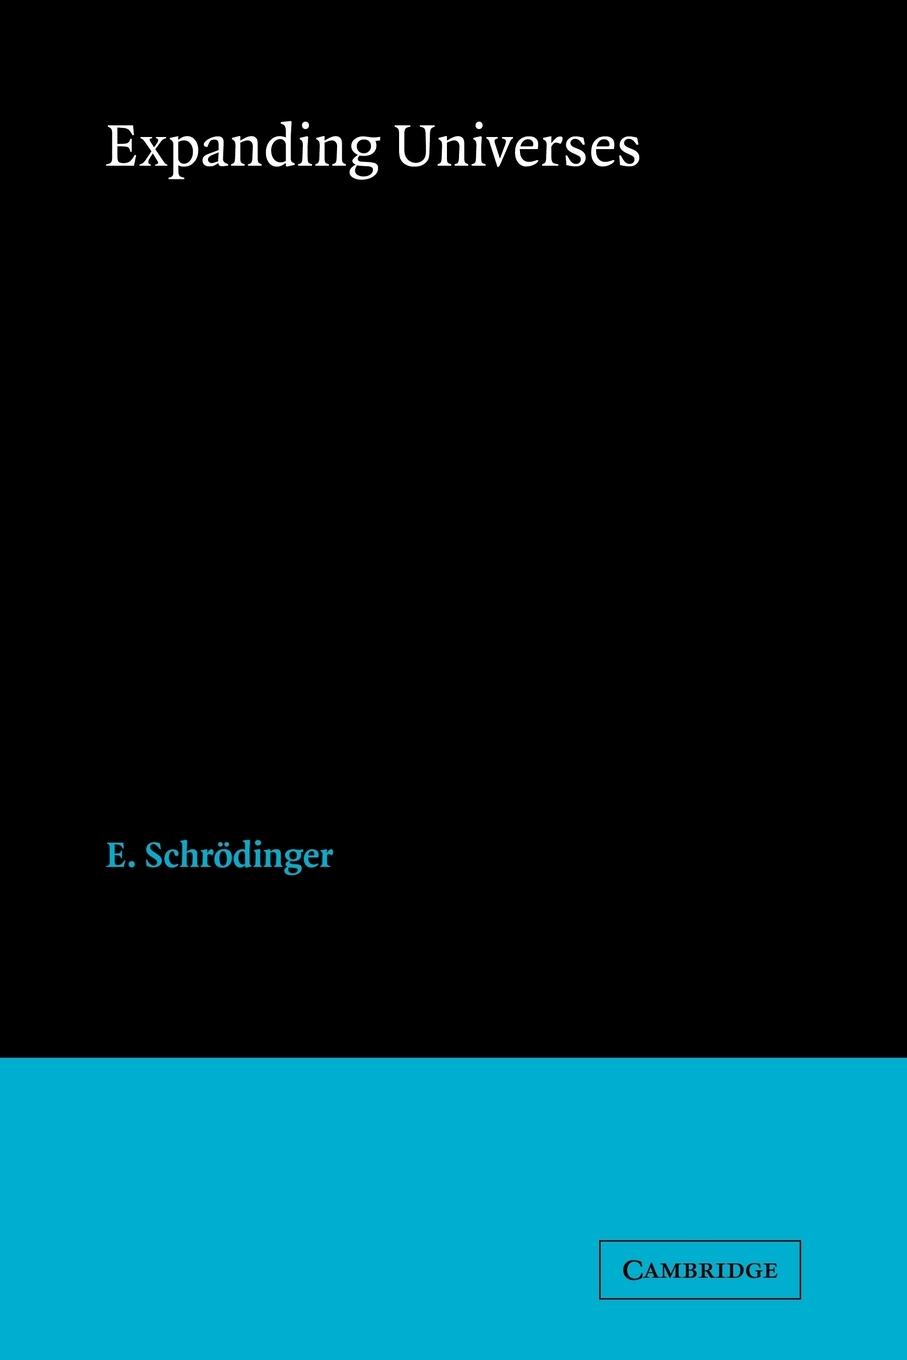 Expanding Universe - E, Schrodinger|Schrodinger, E.|Schrdinger, E.